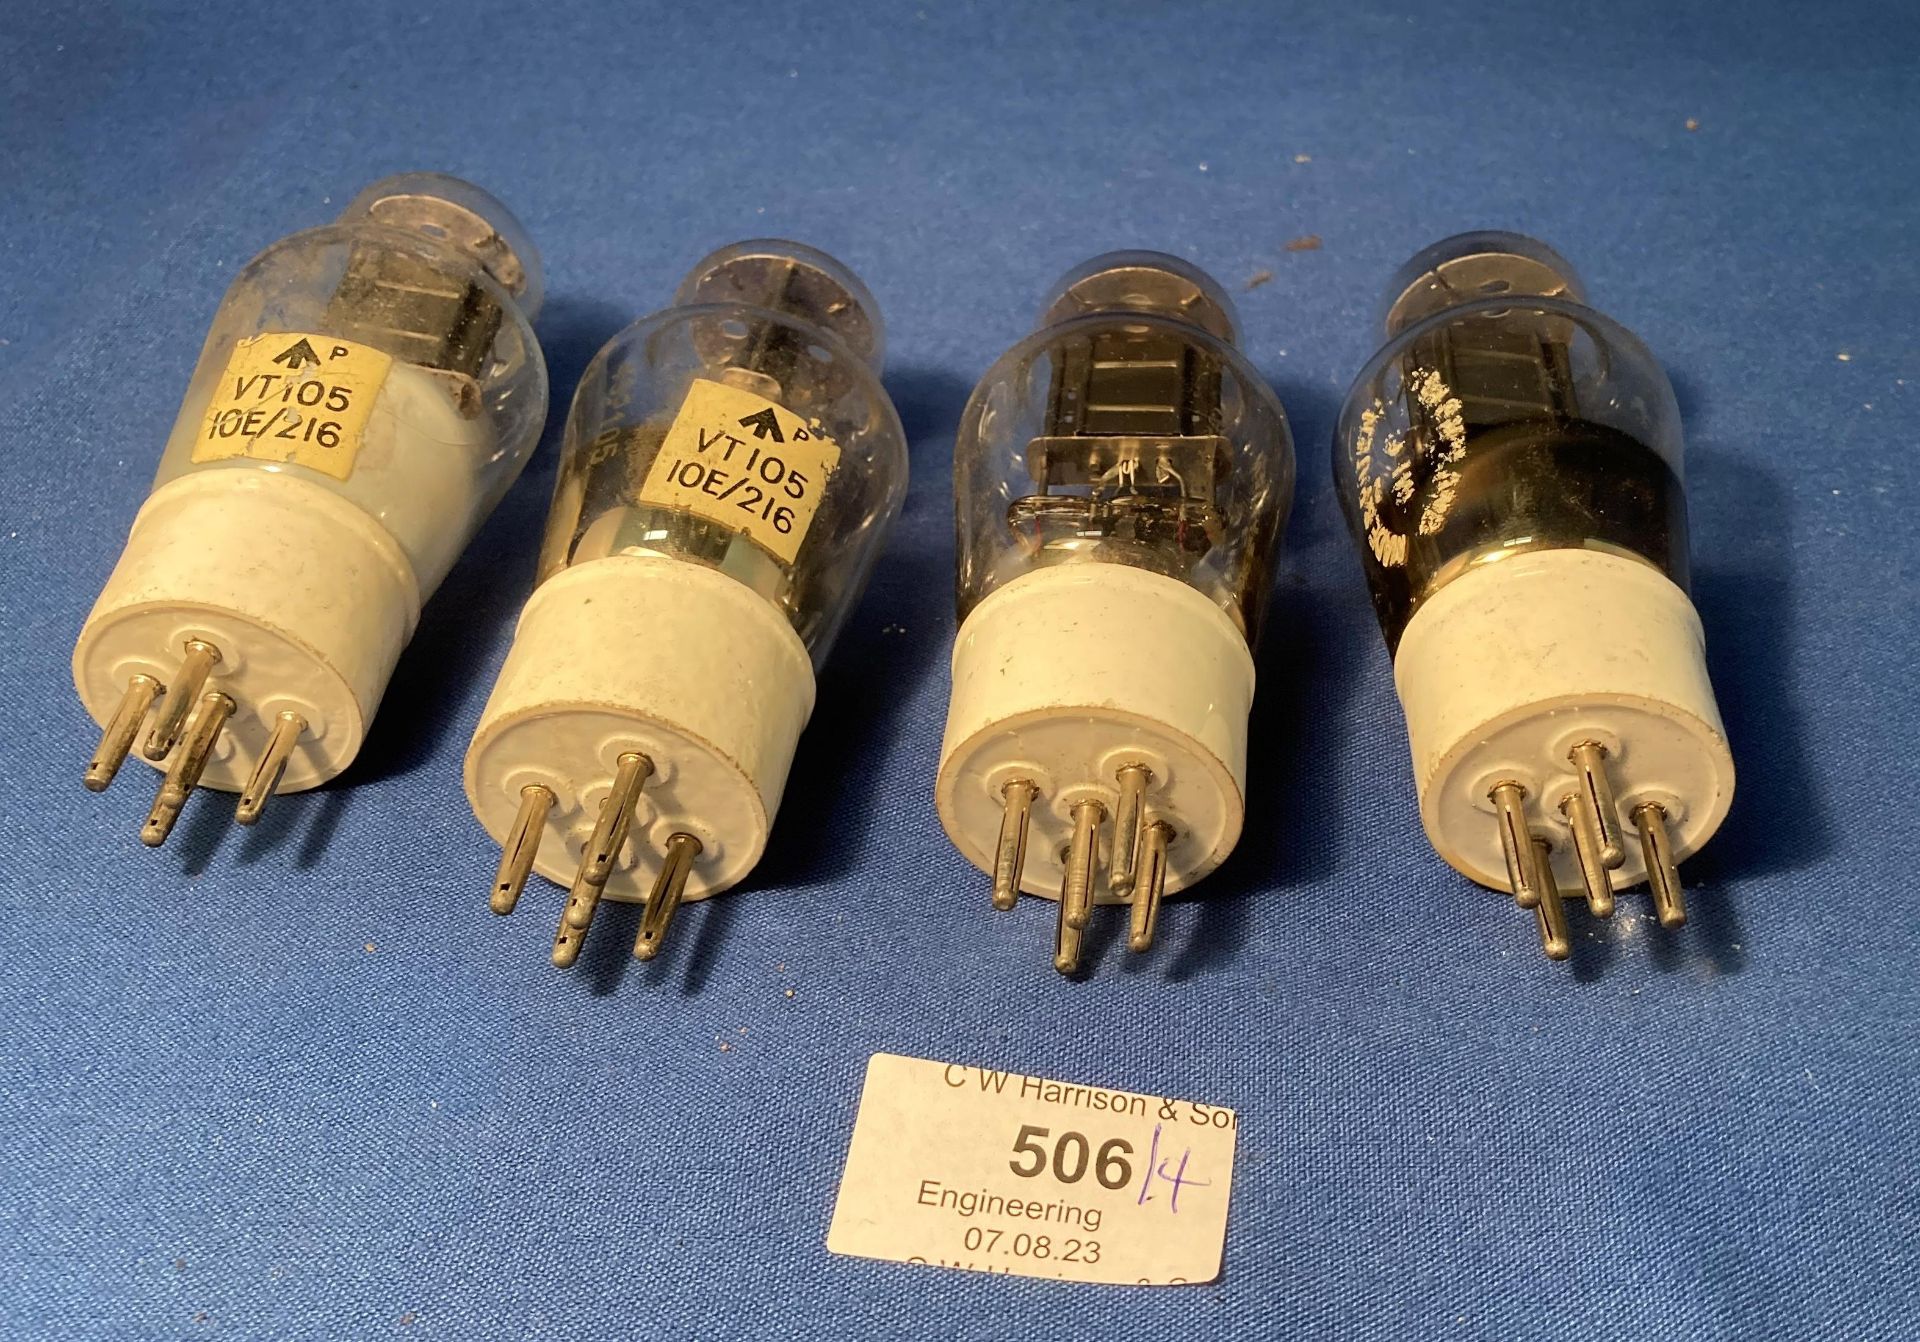 Four ceramic base VT-105 (10E 216) Army Special signal valves (saleroom location: S3 QC07)